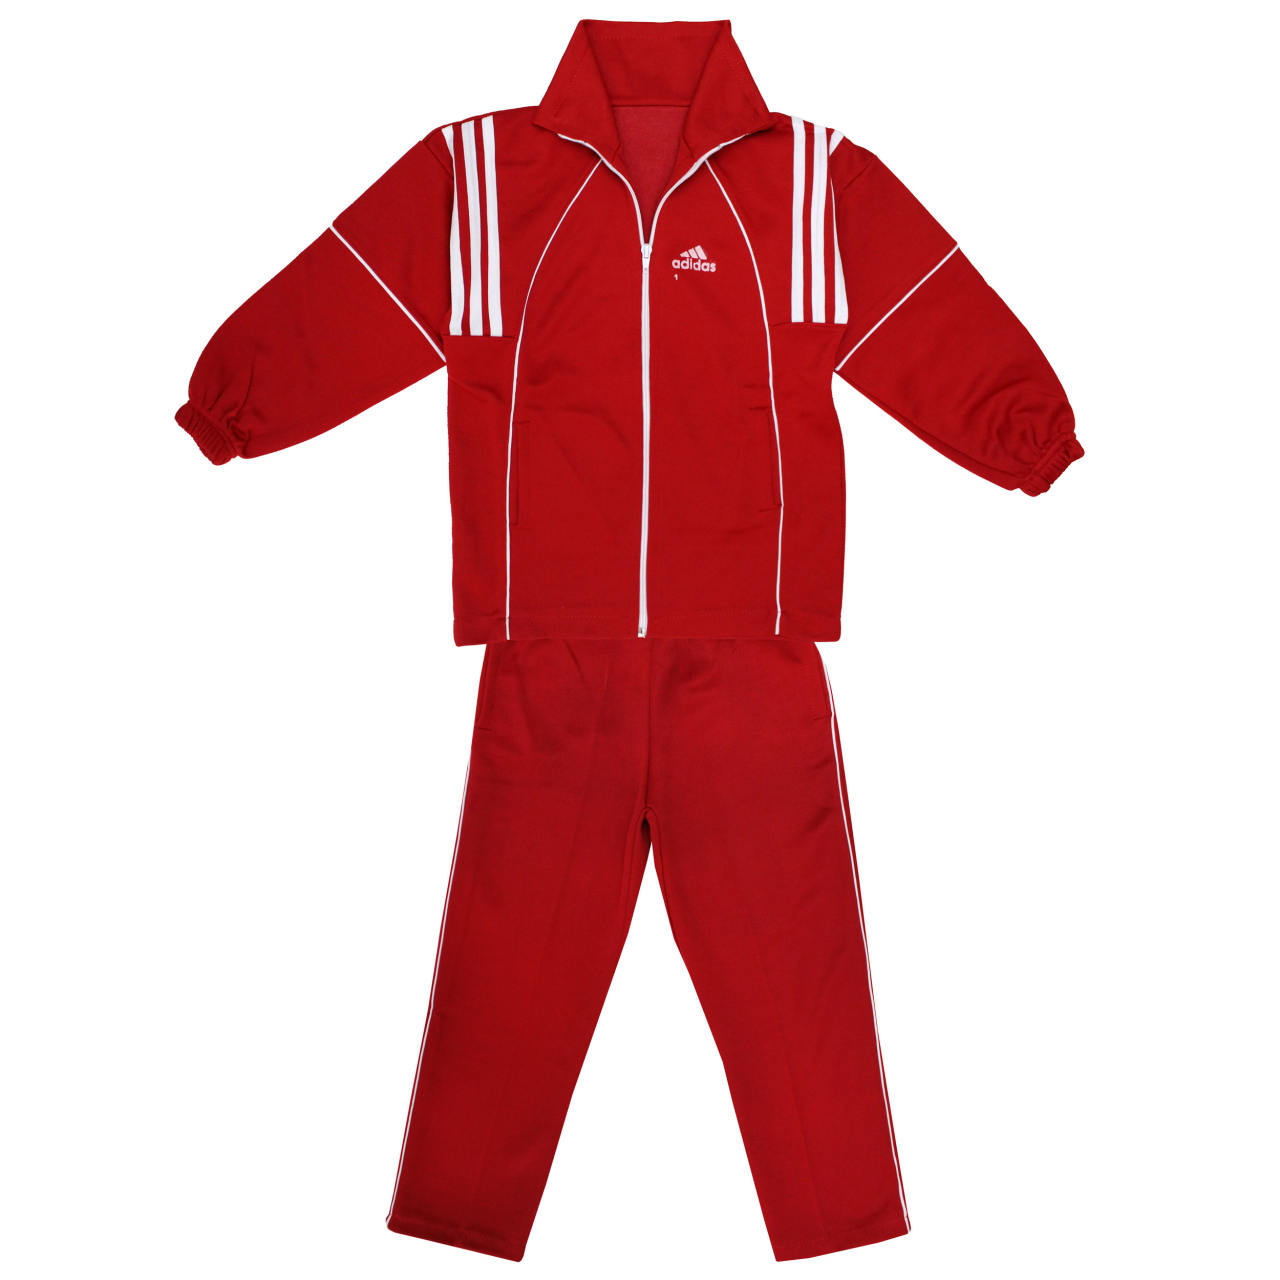 لباس ورزشی بچه گانه  پسرانه -لباس پسرانه ست سویشرت و شلوار ورزشی بچگانه کد GHE55 - قرمز